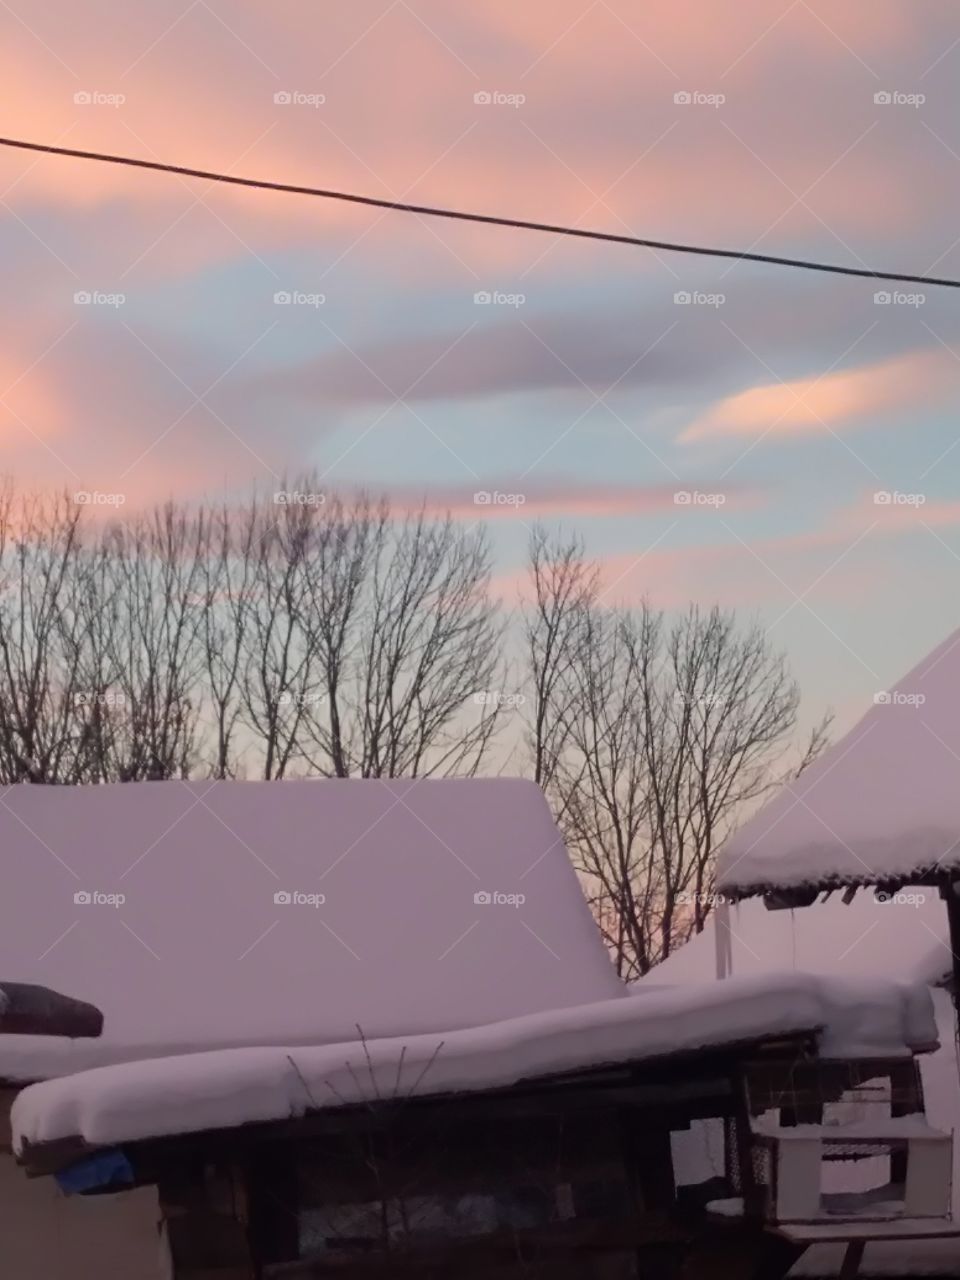 Winter morning sky